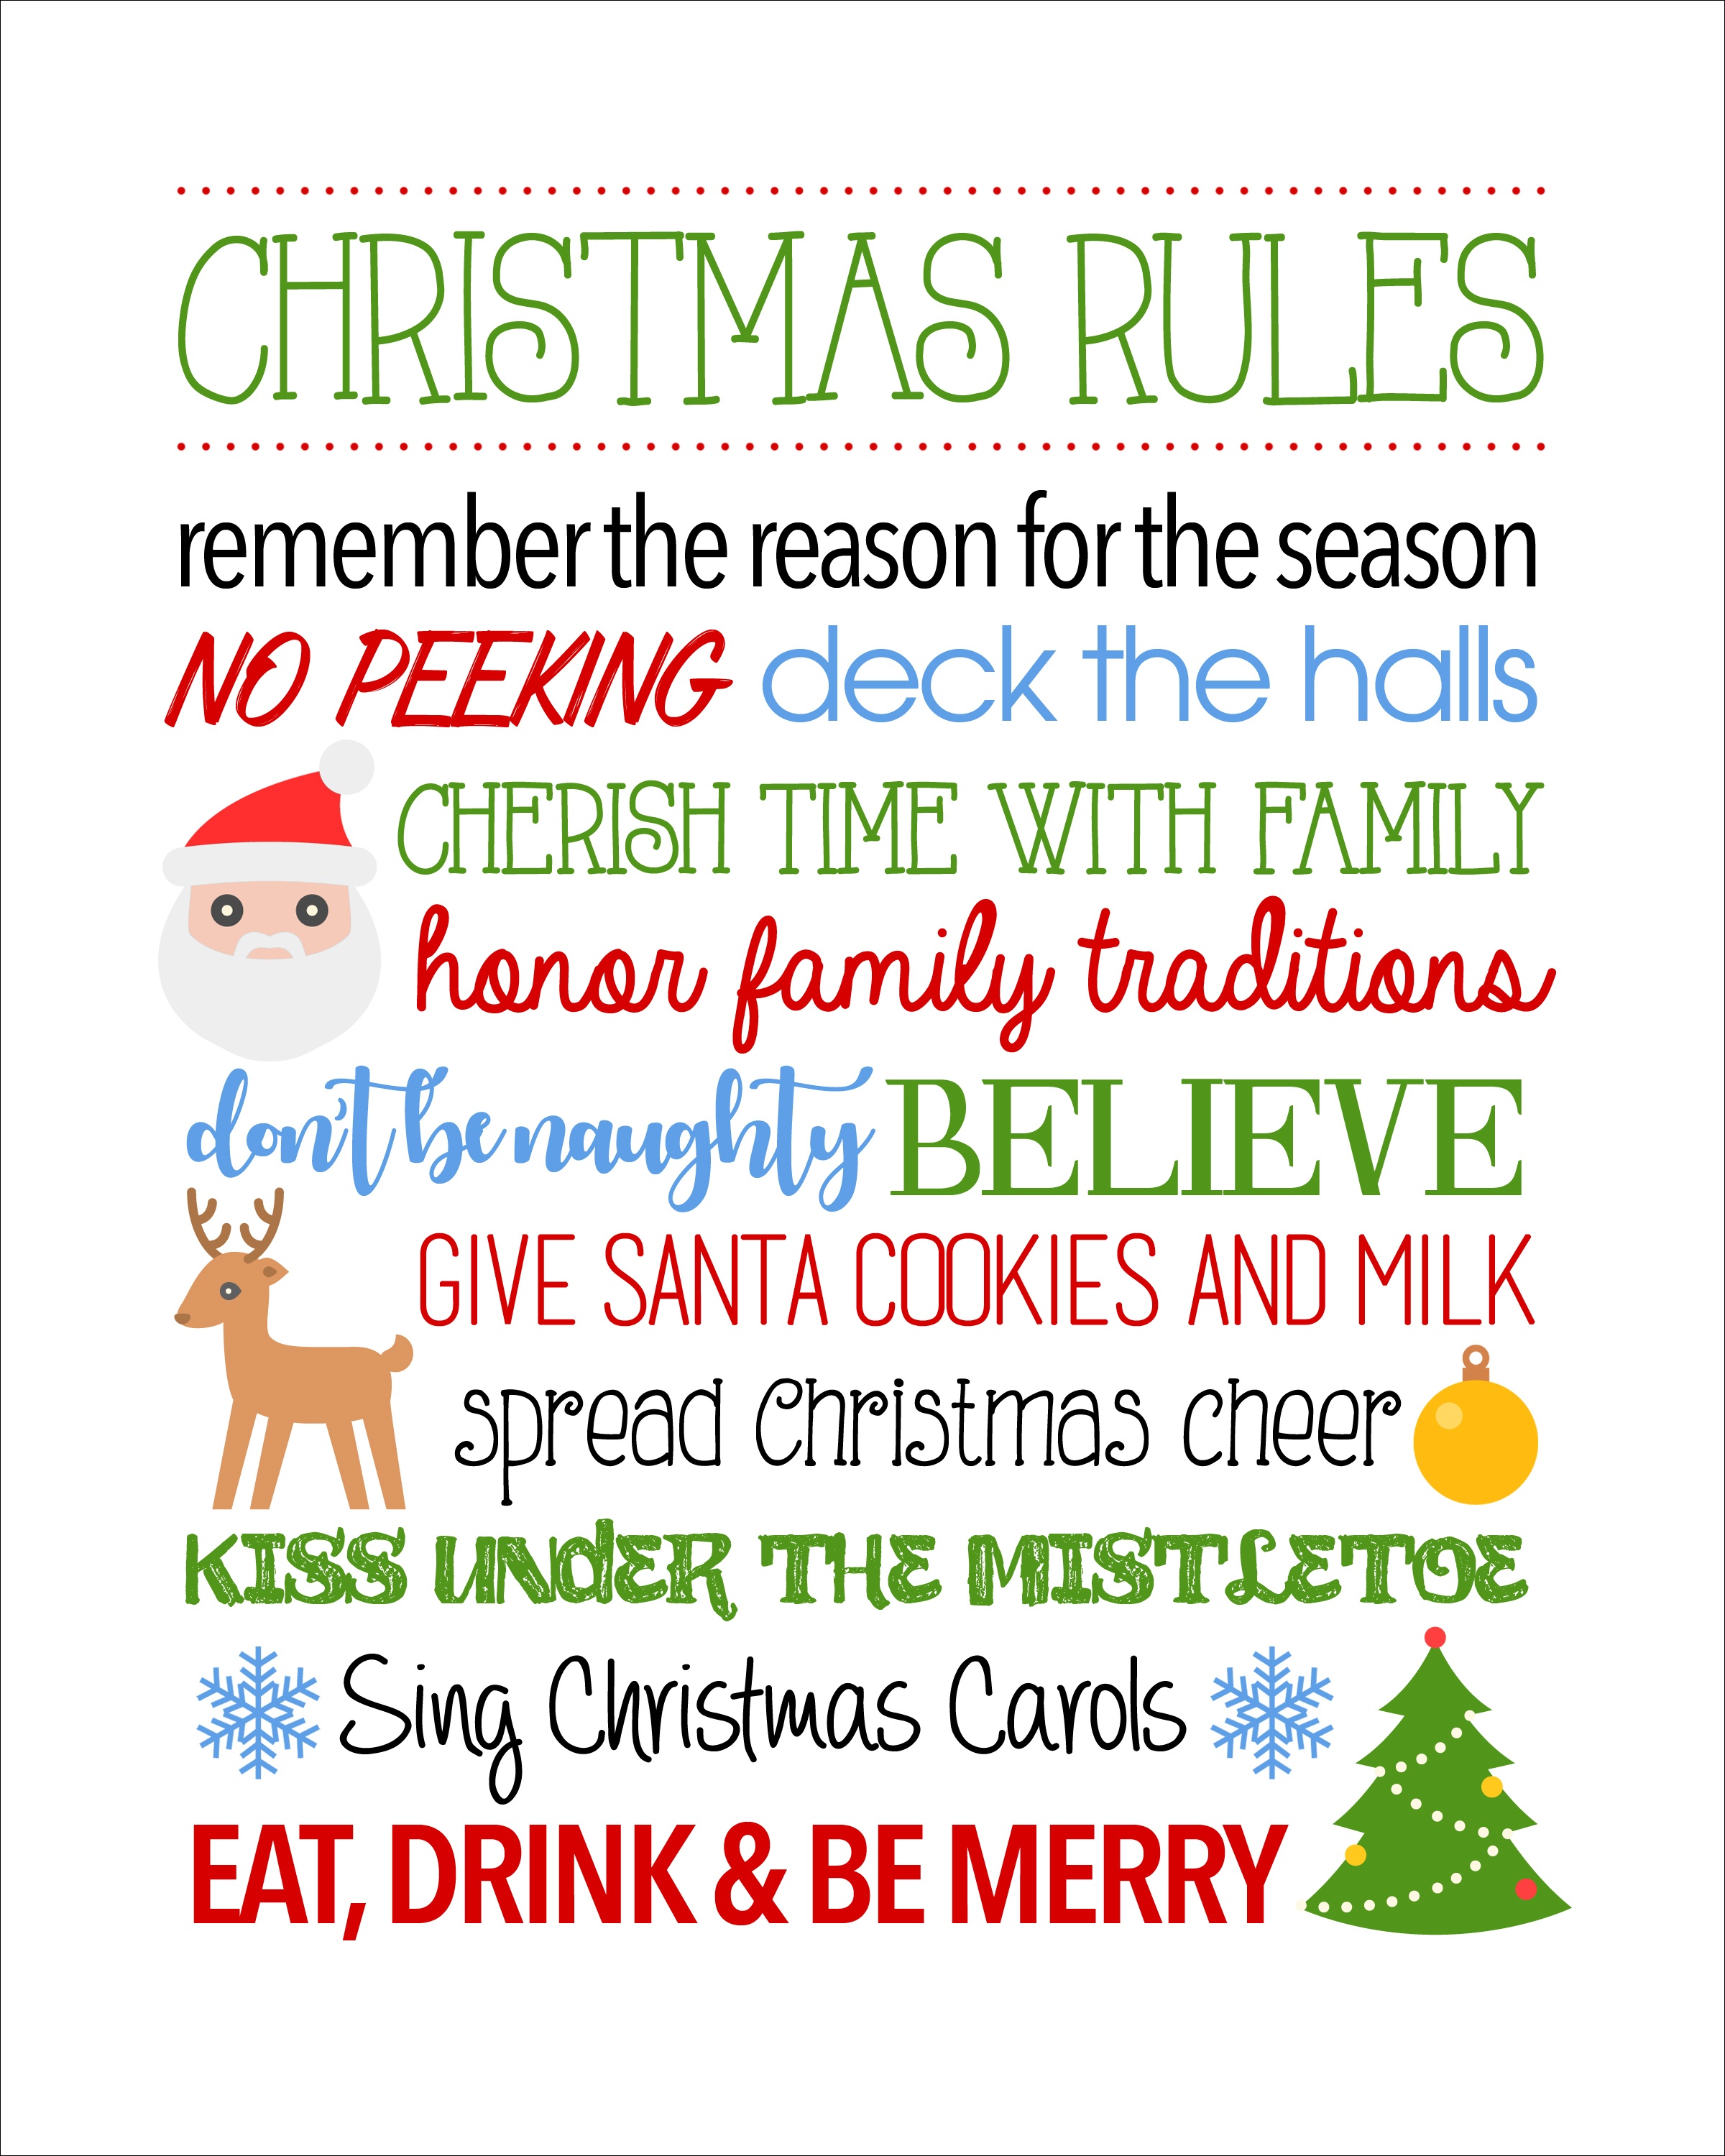 Christmas Rules Free Printable - Christmas Rules Sign - Free Printable Christmas Pictures